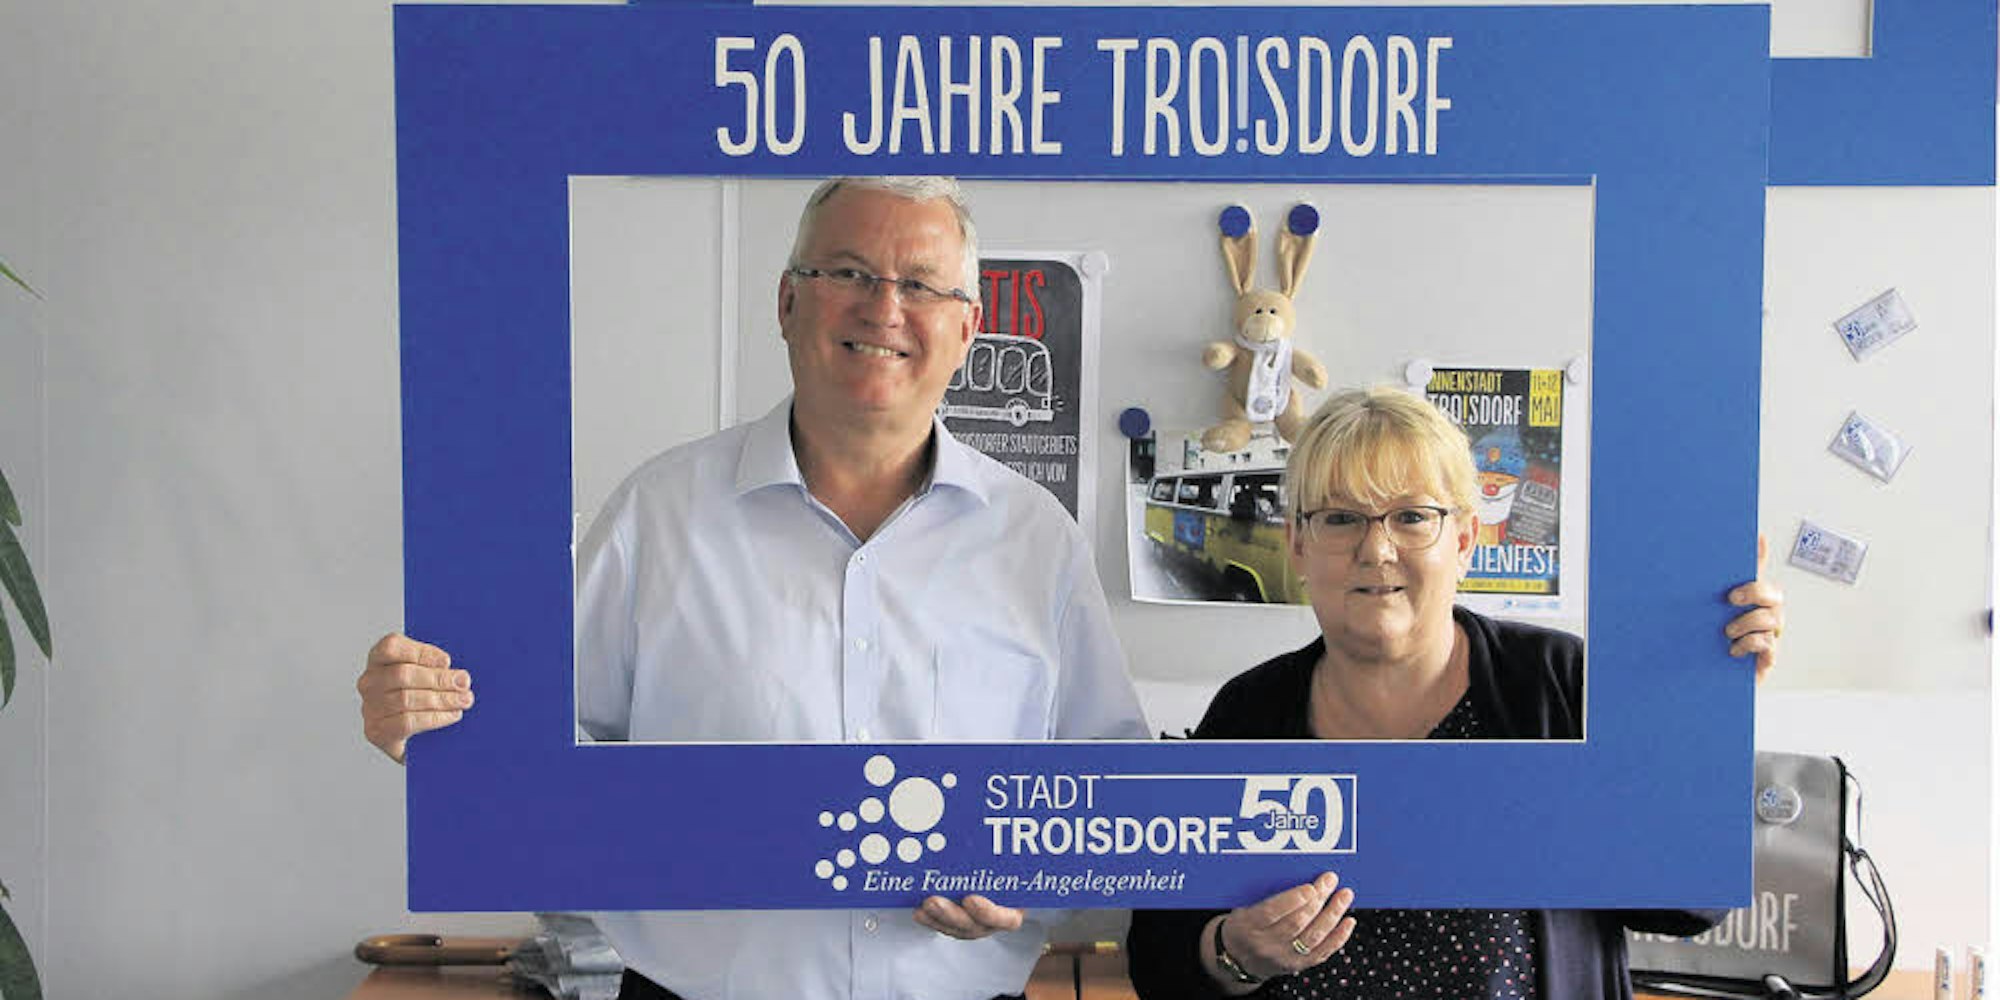 Bürgermeister Klaus-Werner Jablonski und Pressesprecherin Bettina Plugge stellten das Programm für 50 Jahre Troisdorf vor.